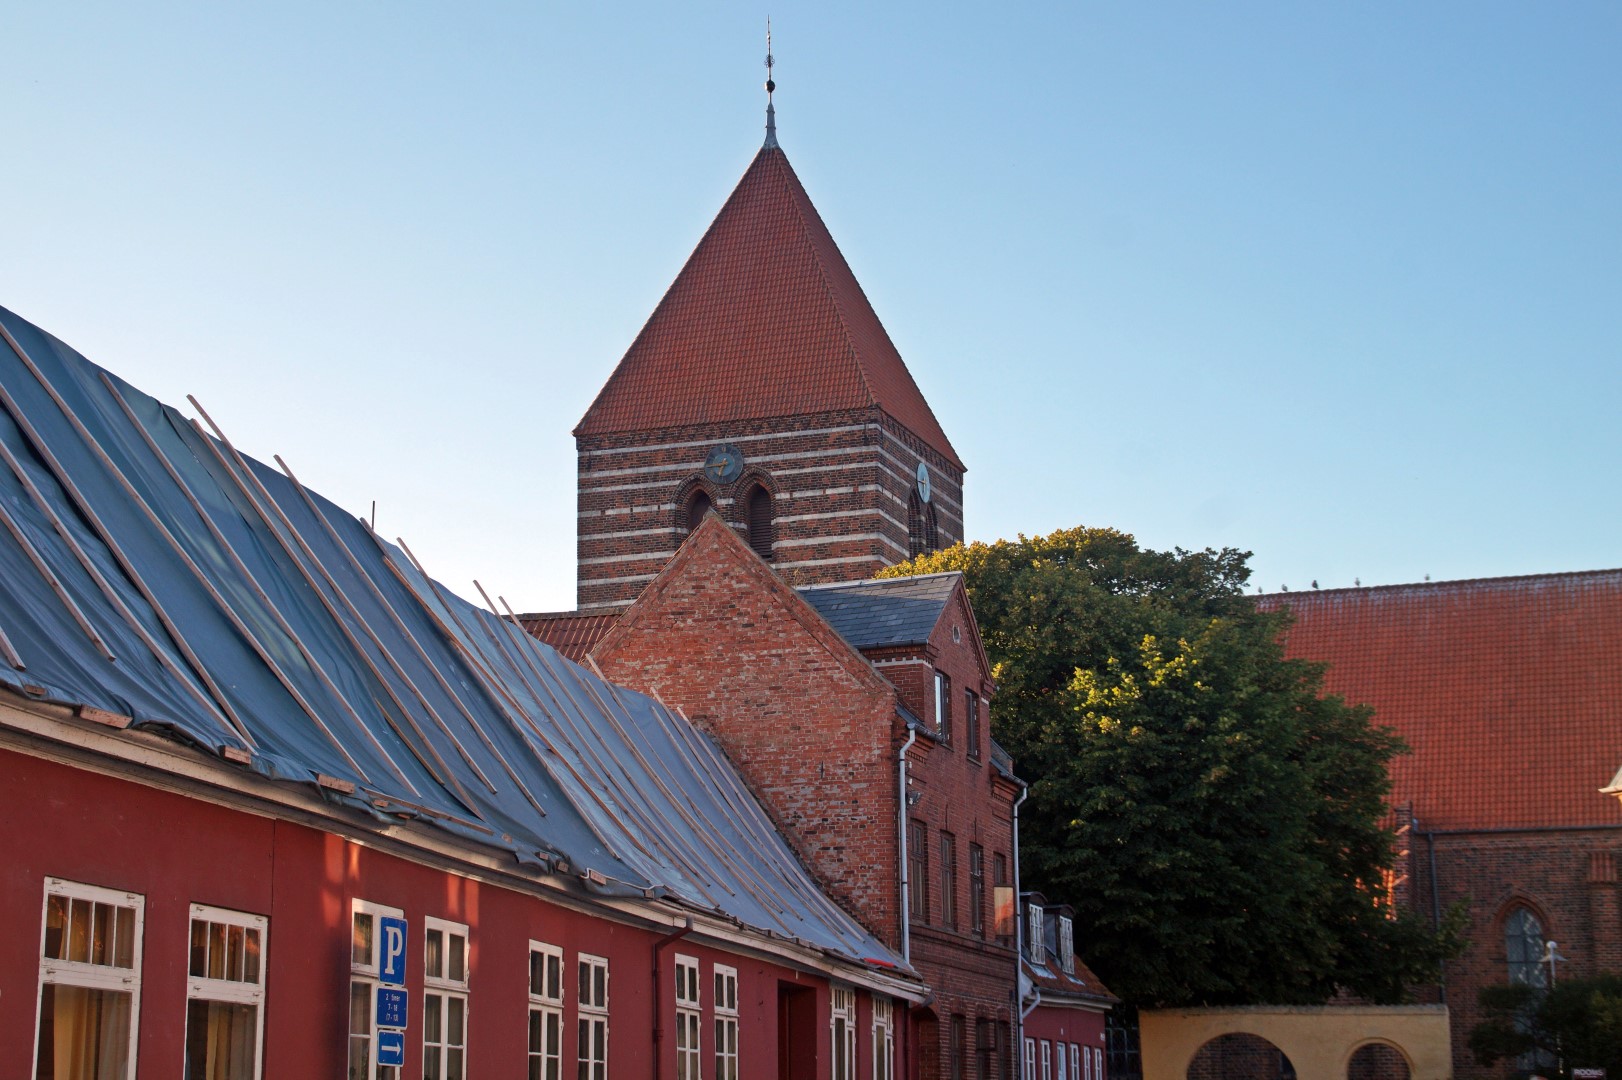 Stege, the biggest town on Møn